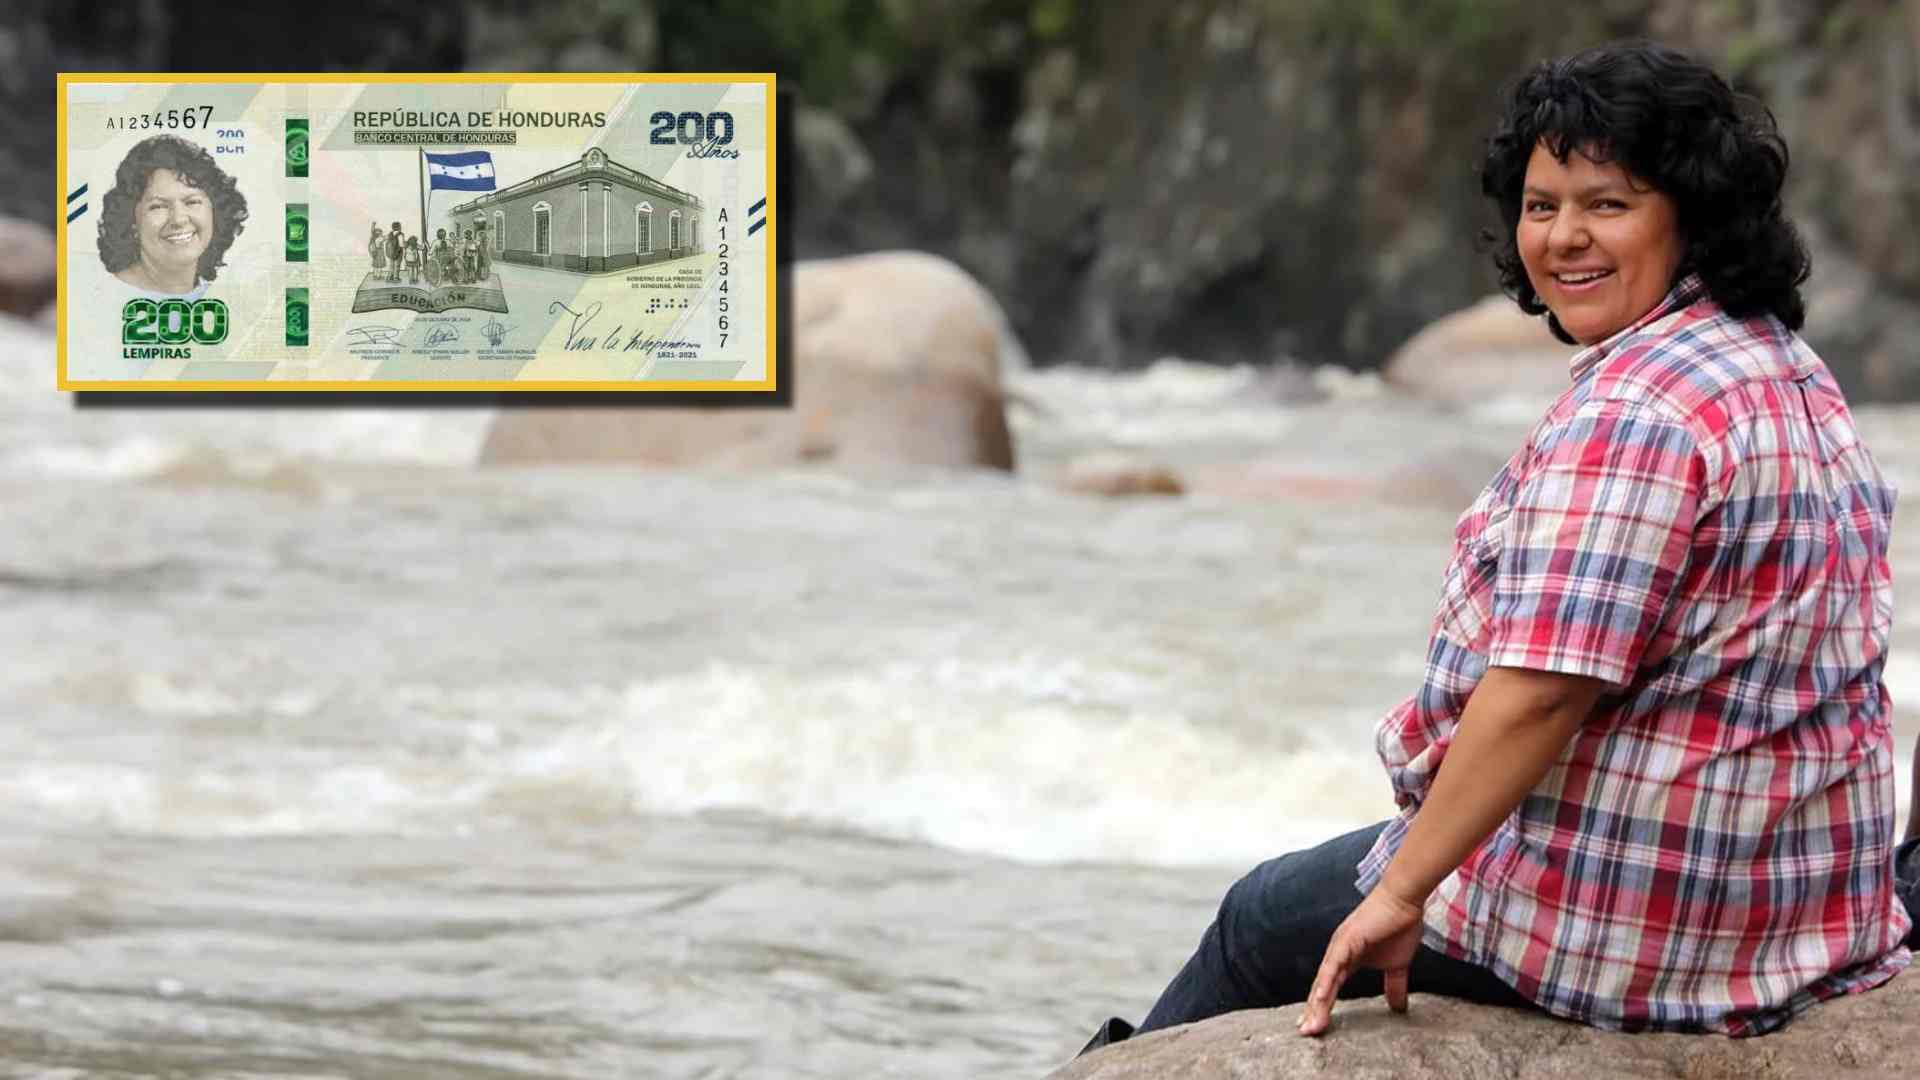 Cambio de imagen en el billete de 200 lempiras; saldrá imagen de Berta Cáceres